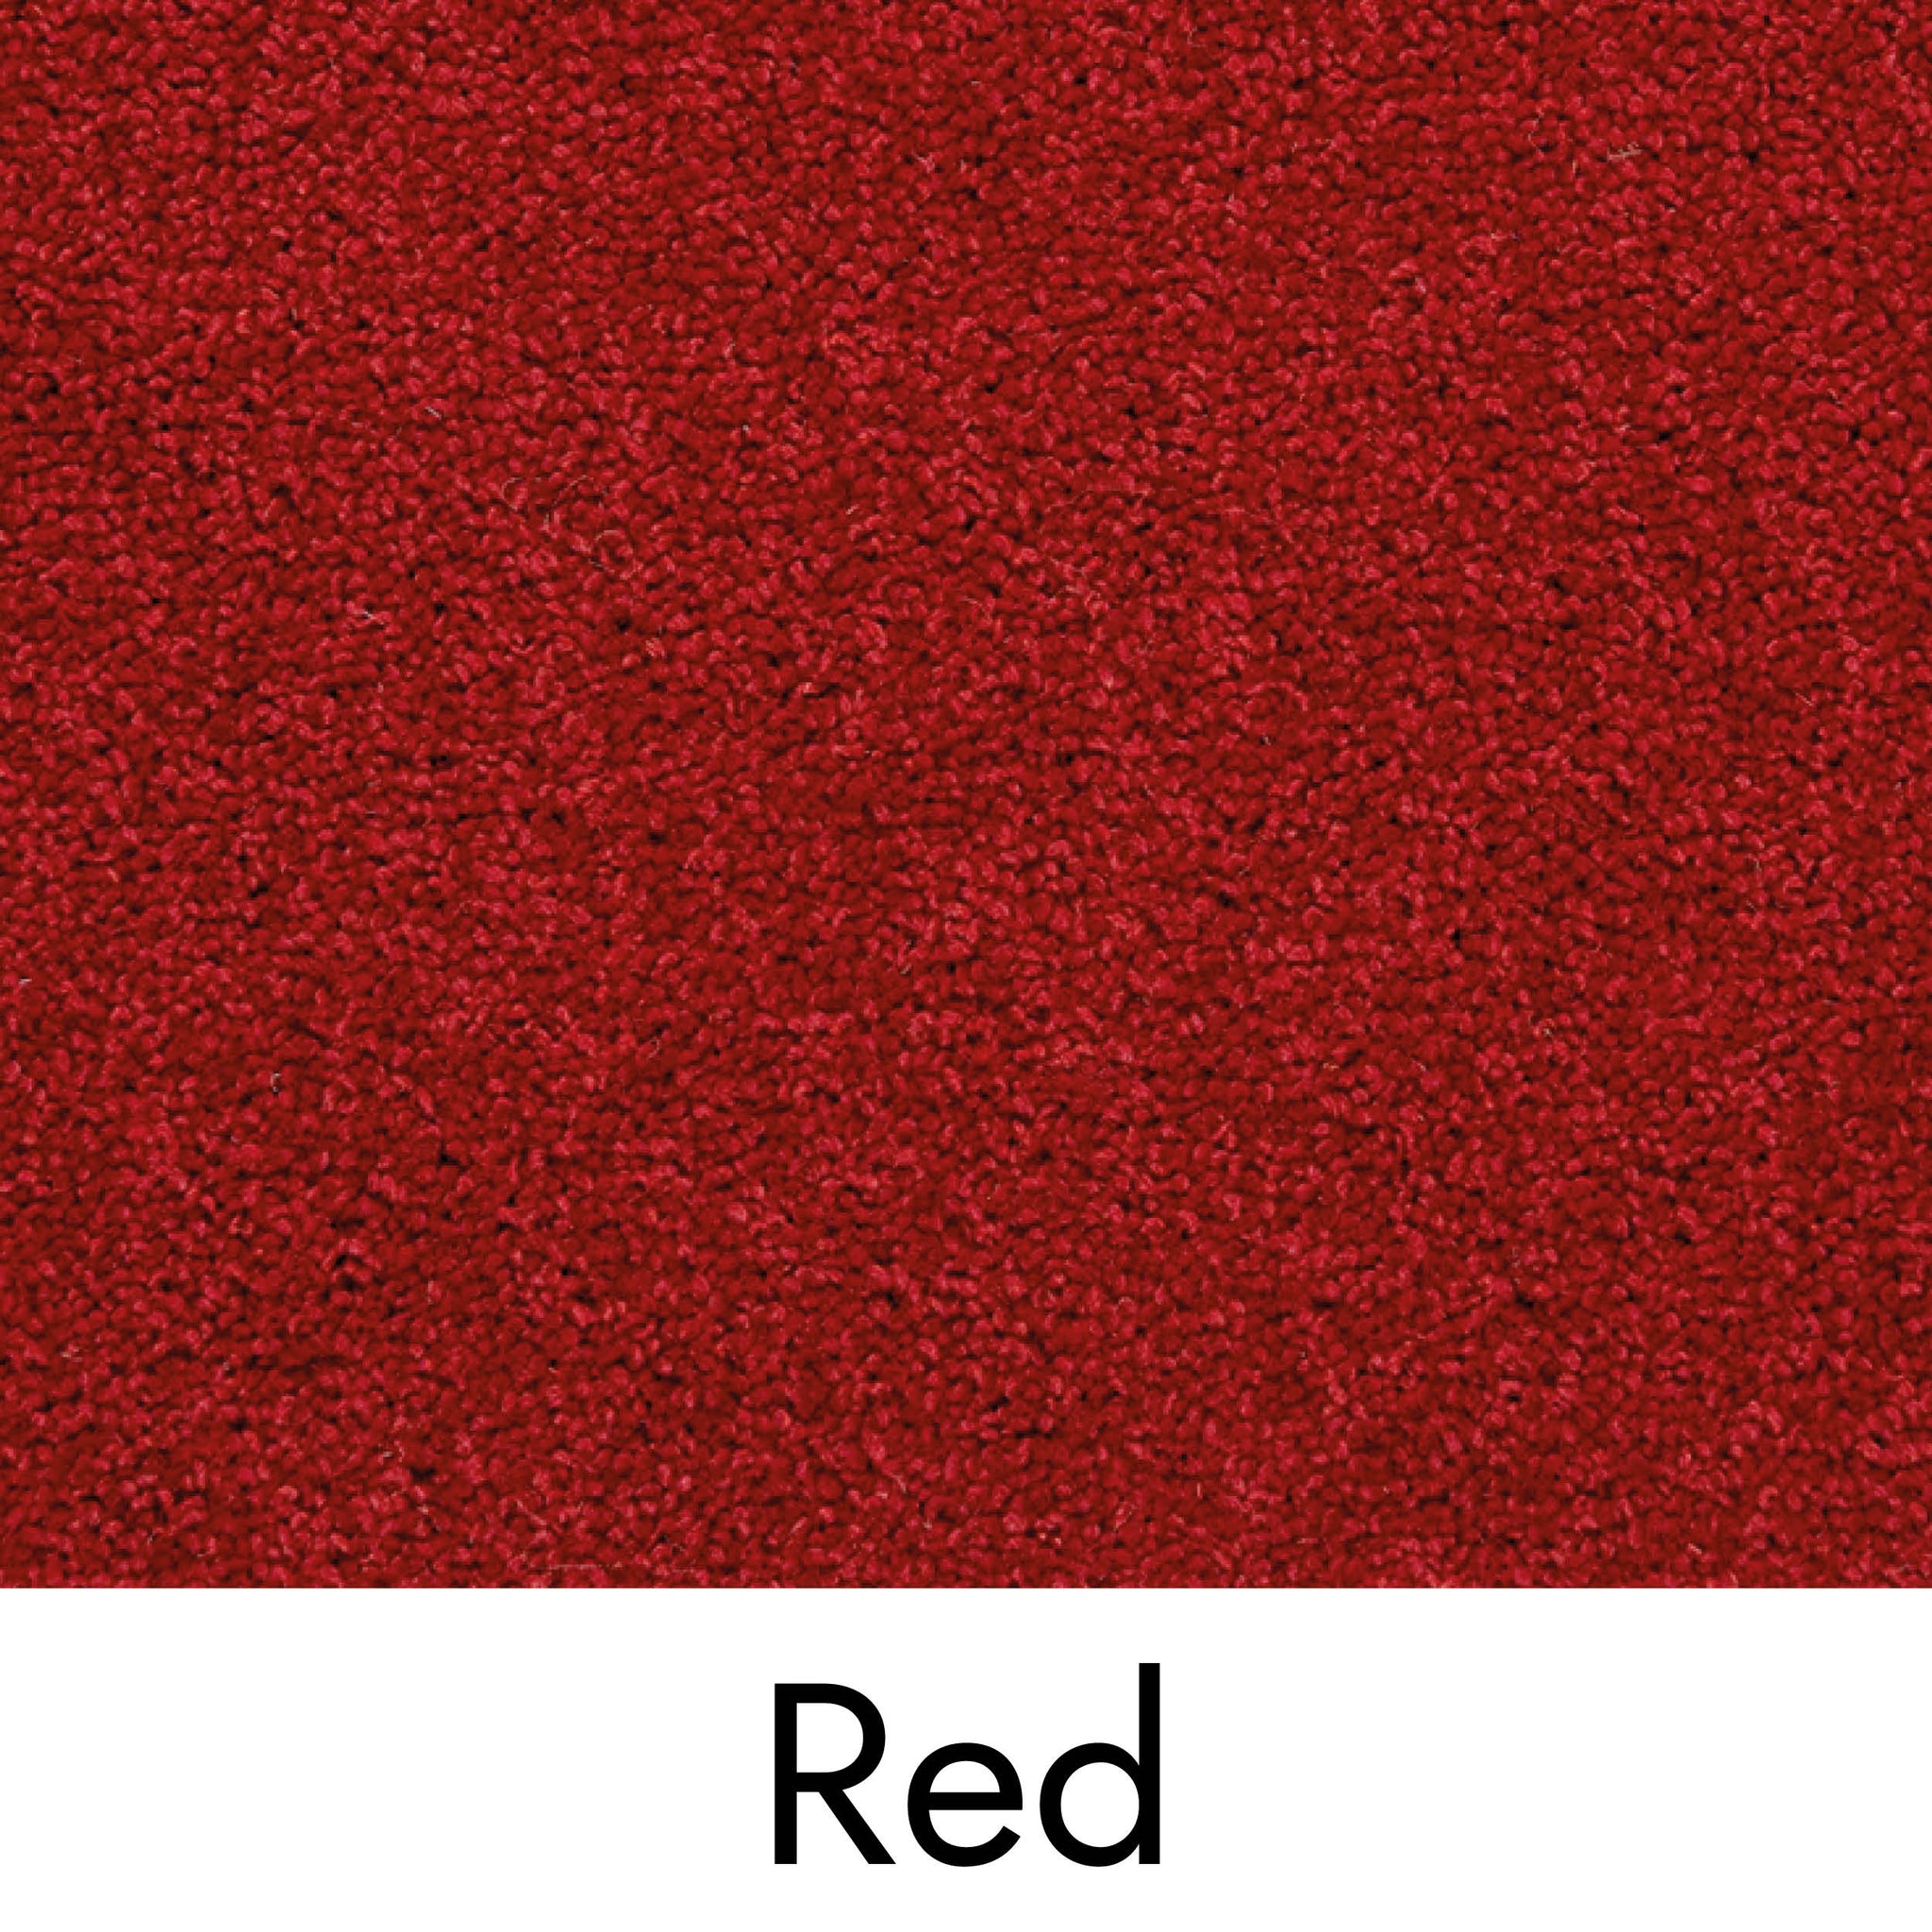 Red Carpet - Floor to Door